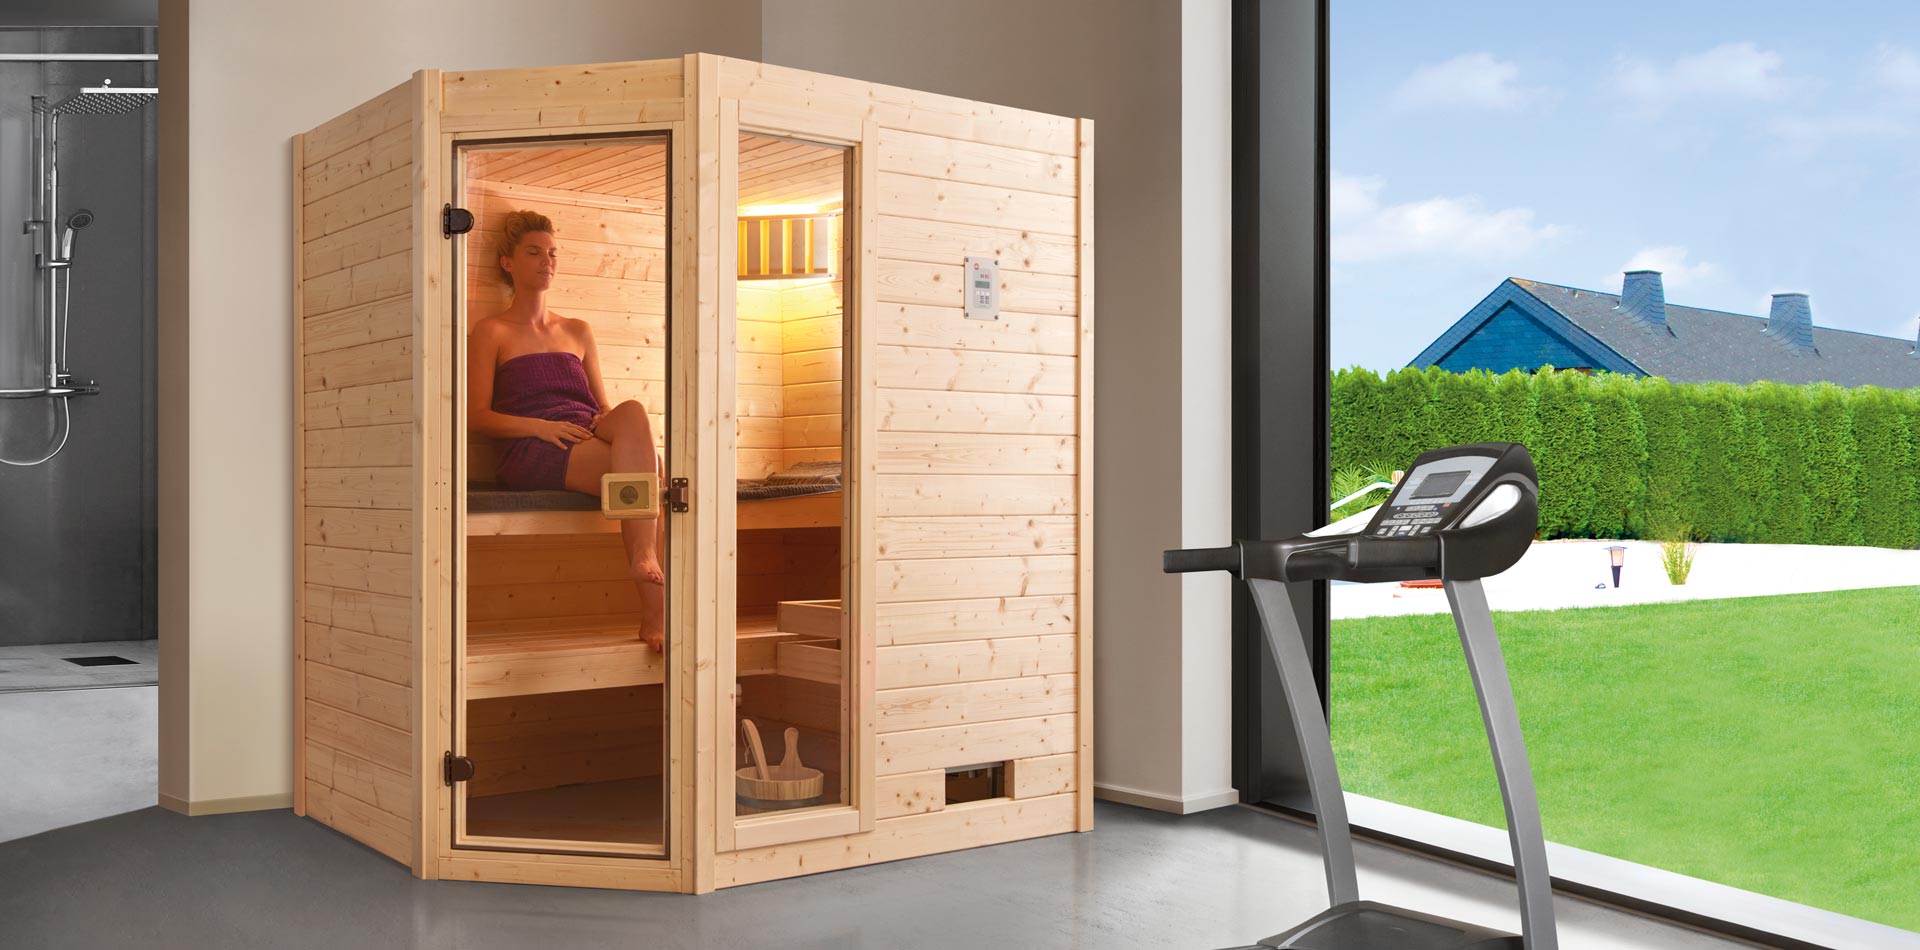 Sauna mit Glastür und Fensterelement, in der eine Frau sitzt, in einem Fitnessbereich